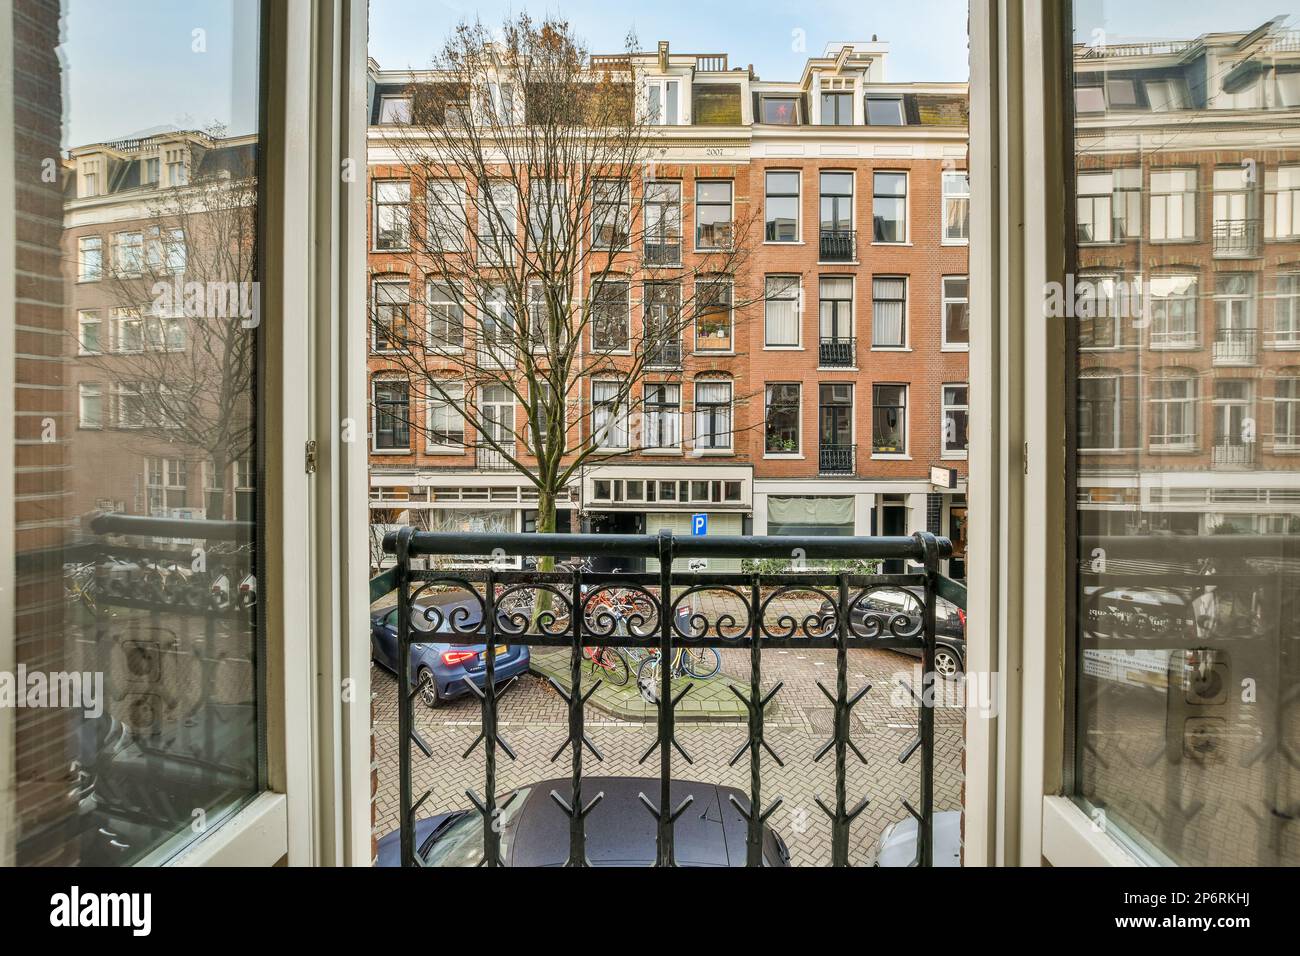 Amsterdam, pays-Bas - 10 avril 2021 : vue d'une fenêtre ouverte dans un bâtiment avec des voitures garées dans la rue à l'extérieur et des bâtiments visibles derrière Banque D'Images